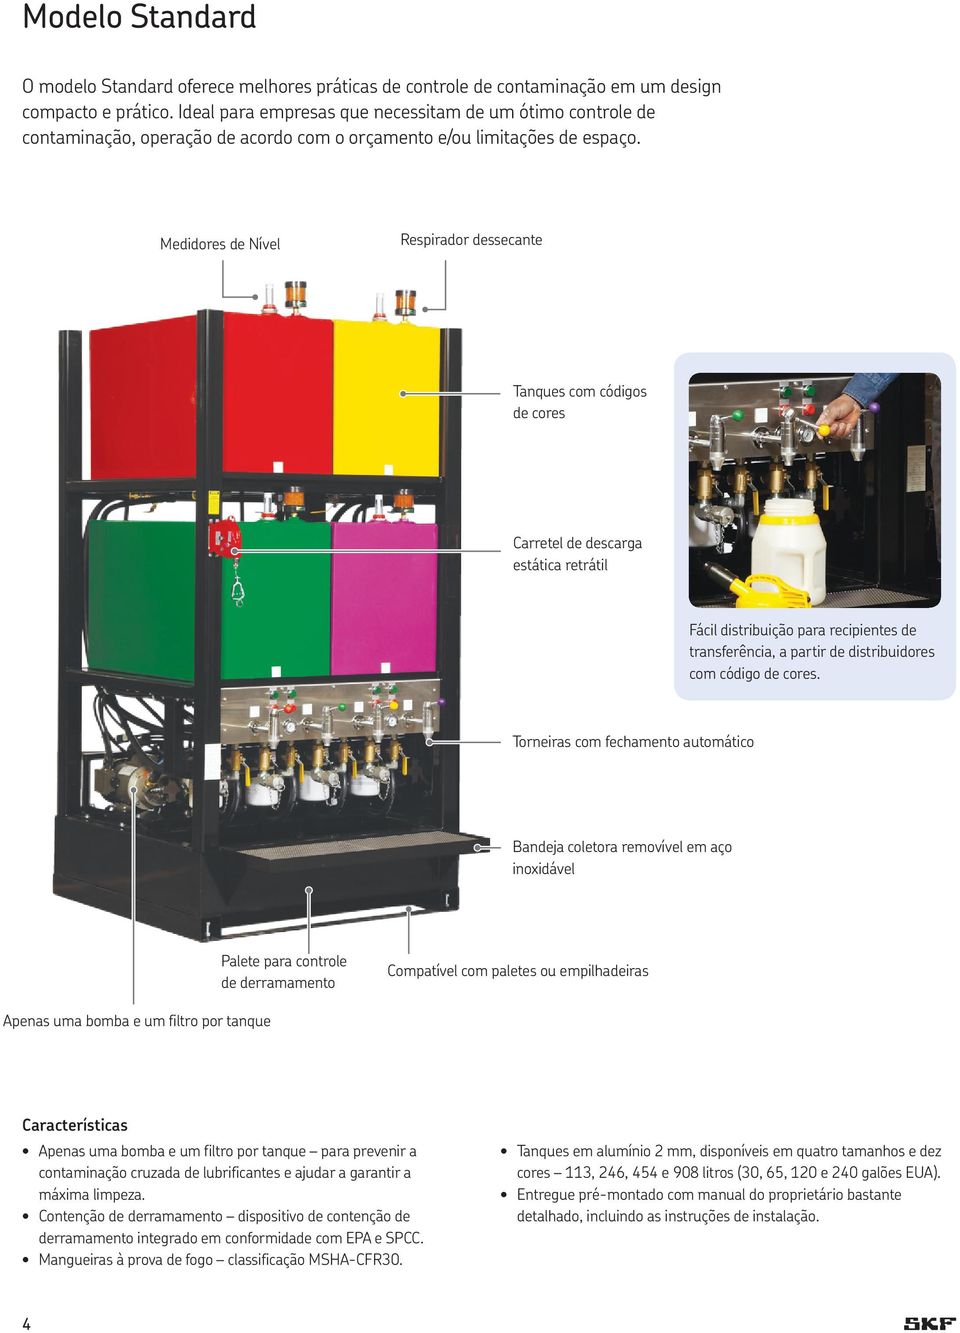 Medidores de Nível Respirador dessecante Tanques com códigos de cores Carretel de descarga estática retrátil Fácil distribuição para recipientes de transferência, a partir de distribuidores com